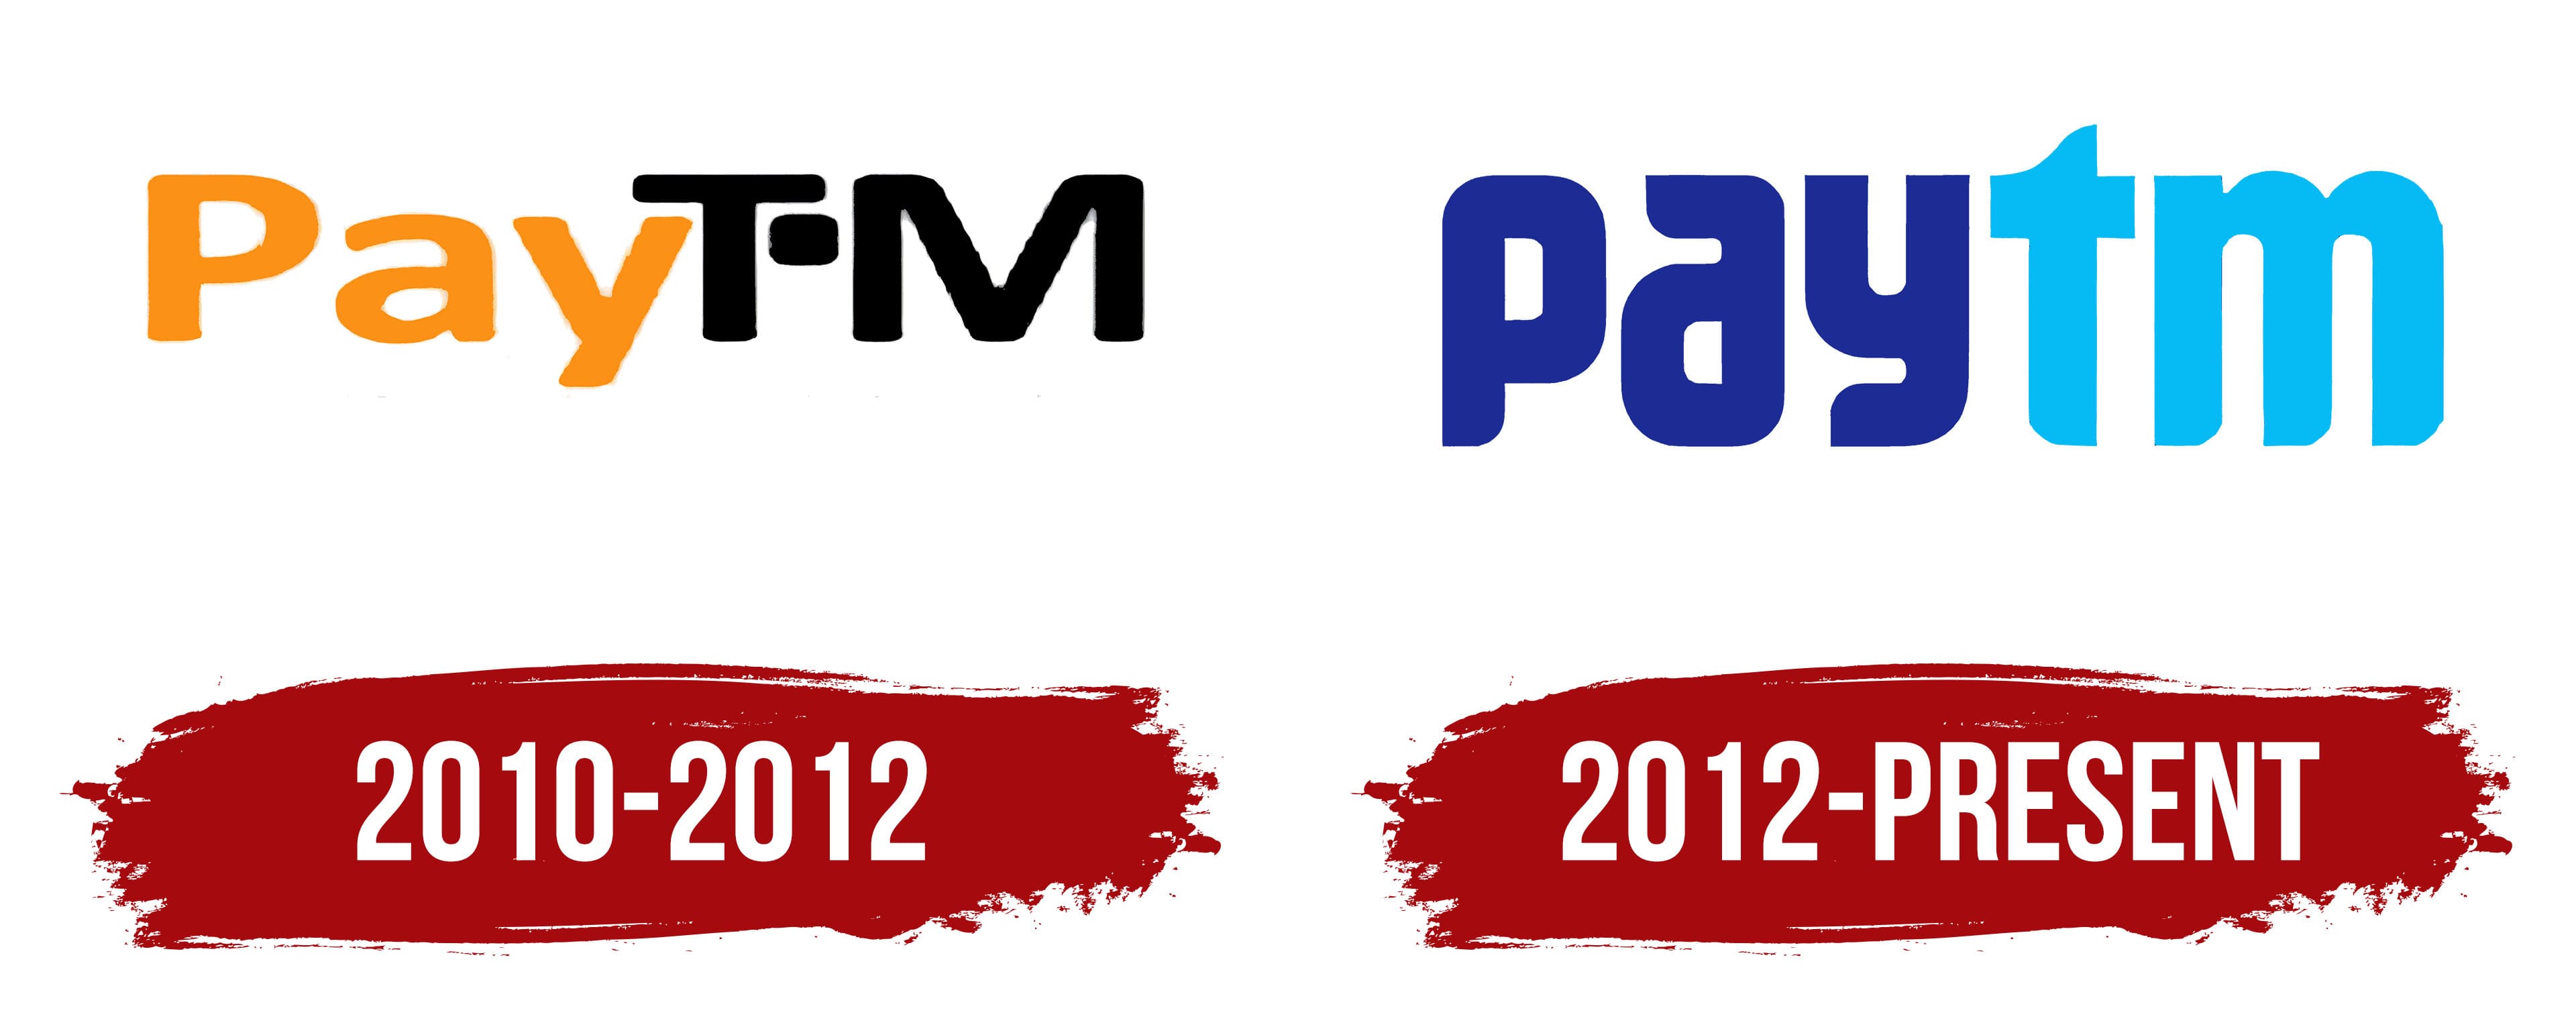 paytm app logo